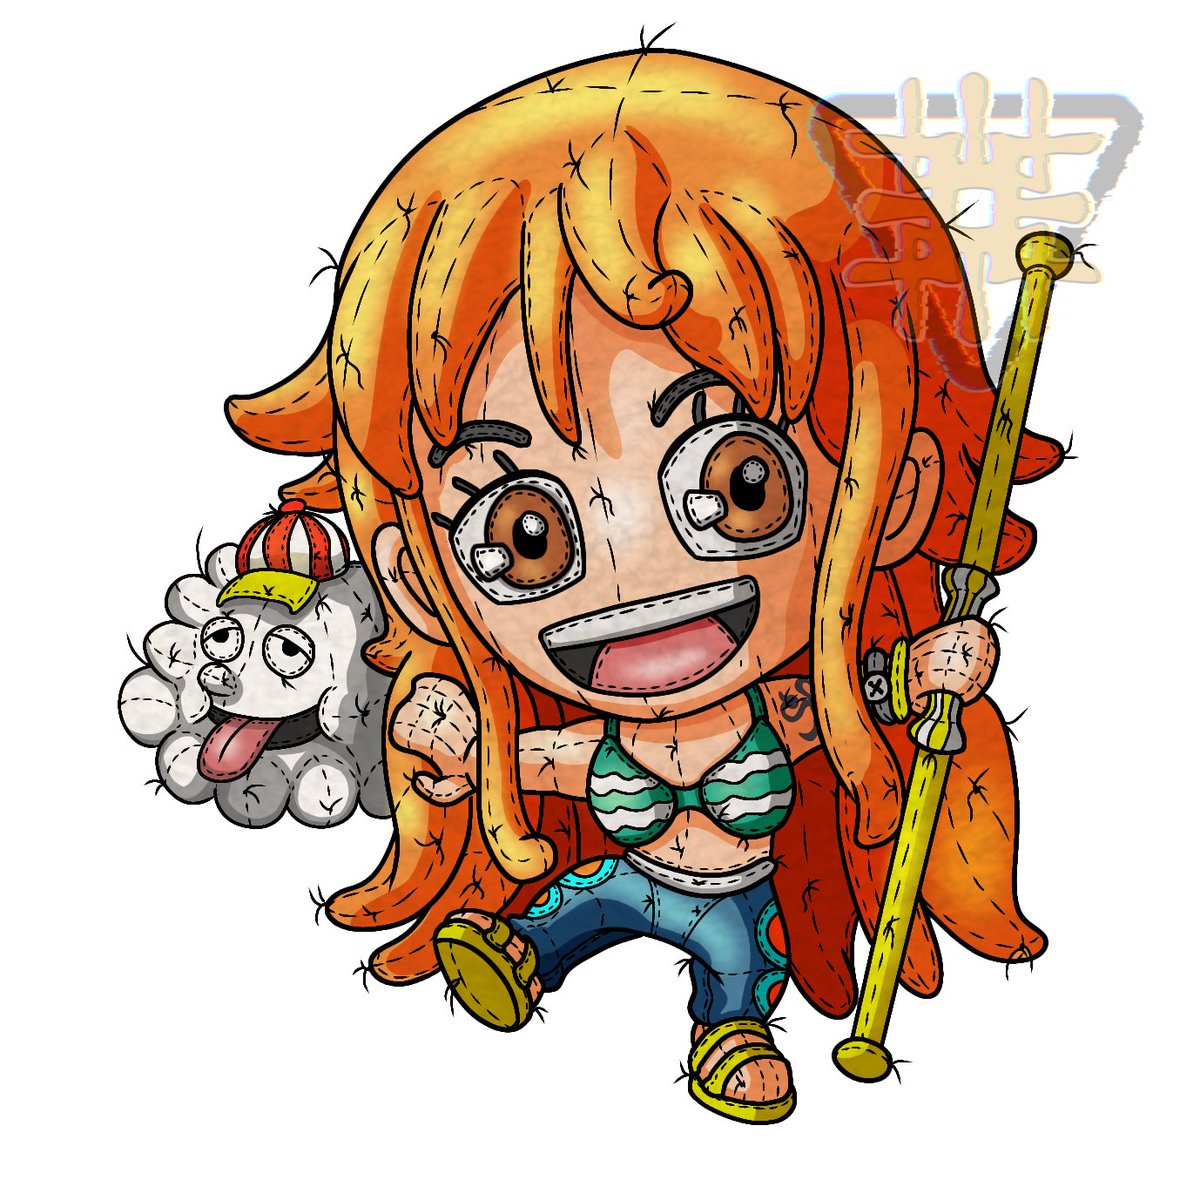 Nếu bạn là một fan của One Piece, bạn sẽ không thể bỏ qua bức tranh về Nami và Luffy này. Với nét vẽ tinh tế và màu sắc sinh động, bức tranh sẽ mang đến cho bạn một trải nghiệm đầy thú vị và phấn khích. Hãy cùng chiêm ngưỡng sức mạnh và tình bạn đích thực của hai nhân vật trong bộ anime này.